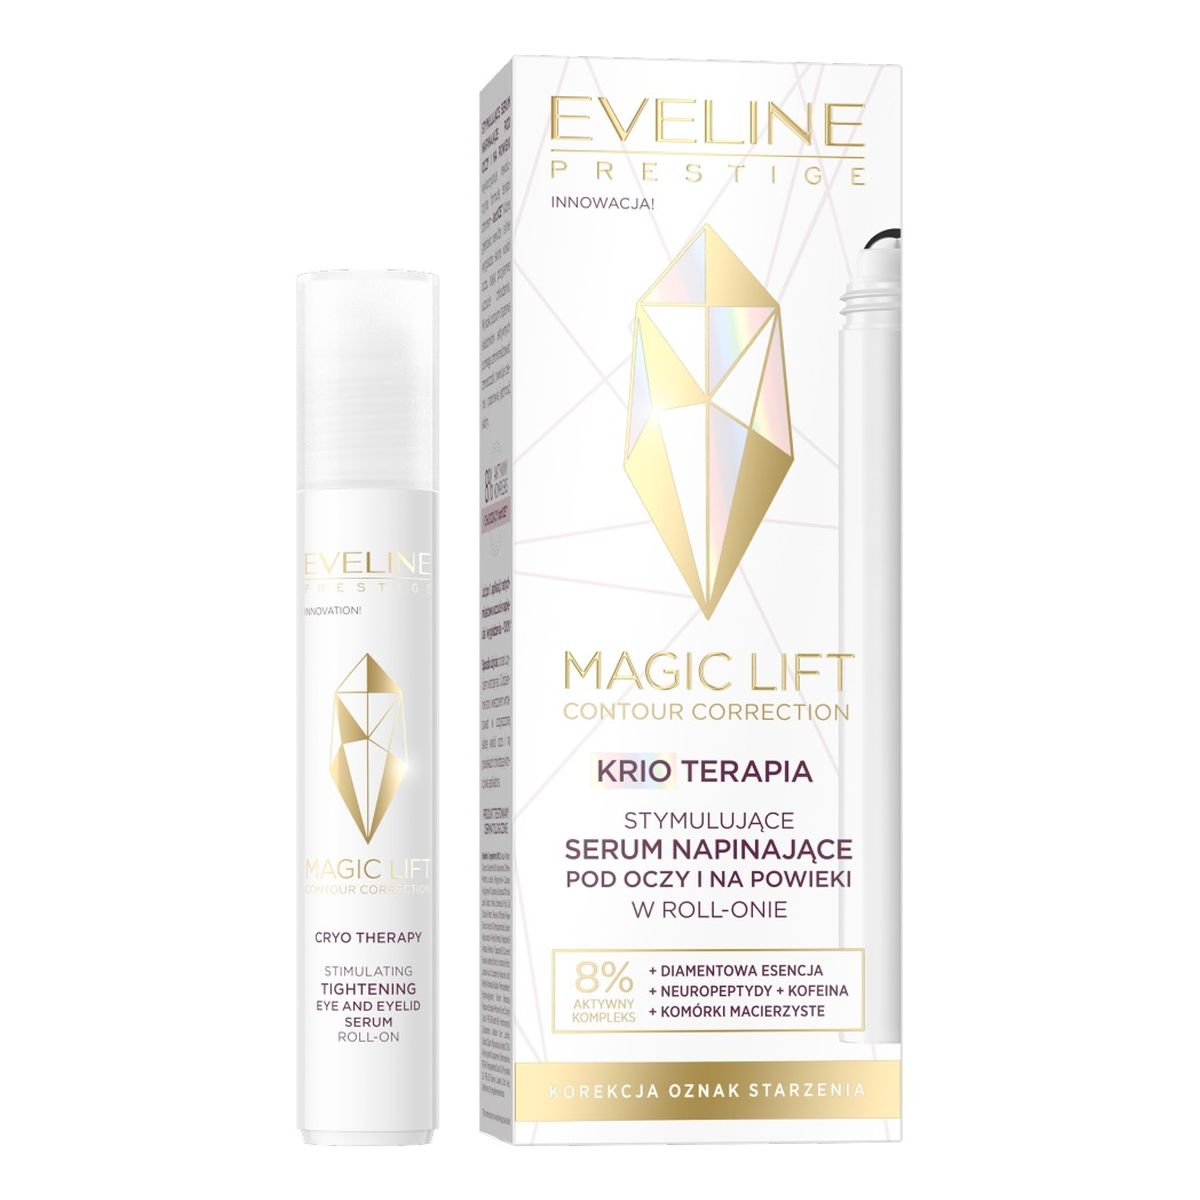 Eveline Magic lift stymulujące serum napinające pod oczy i na powieki w roll-onie 15ml